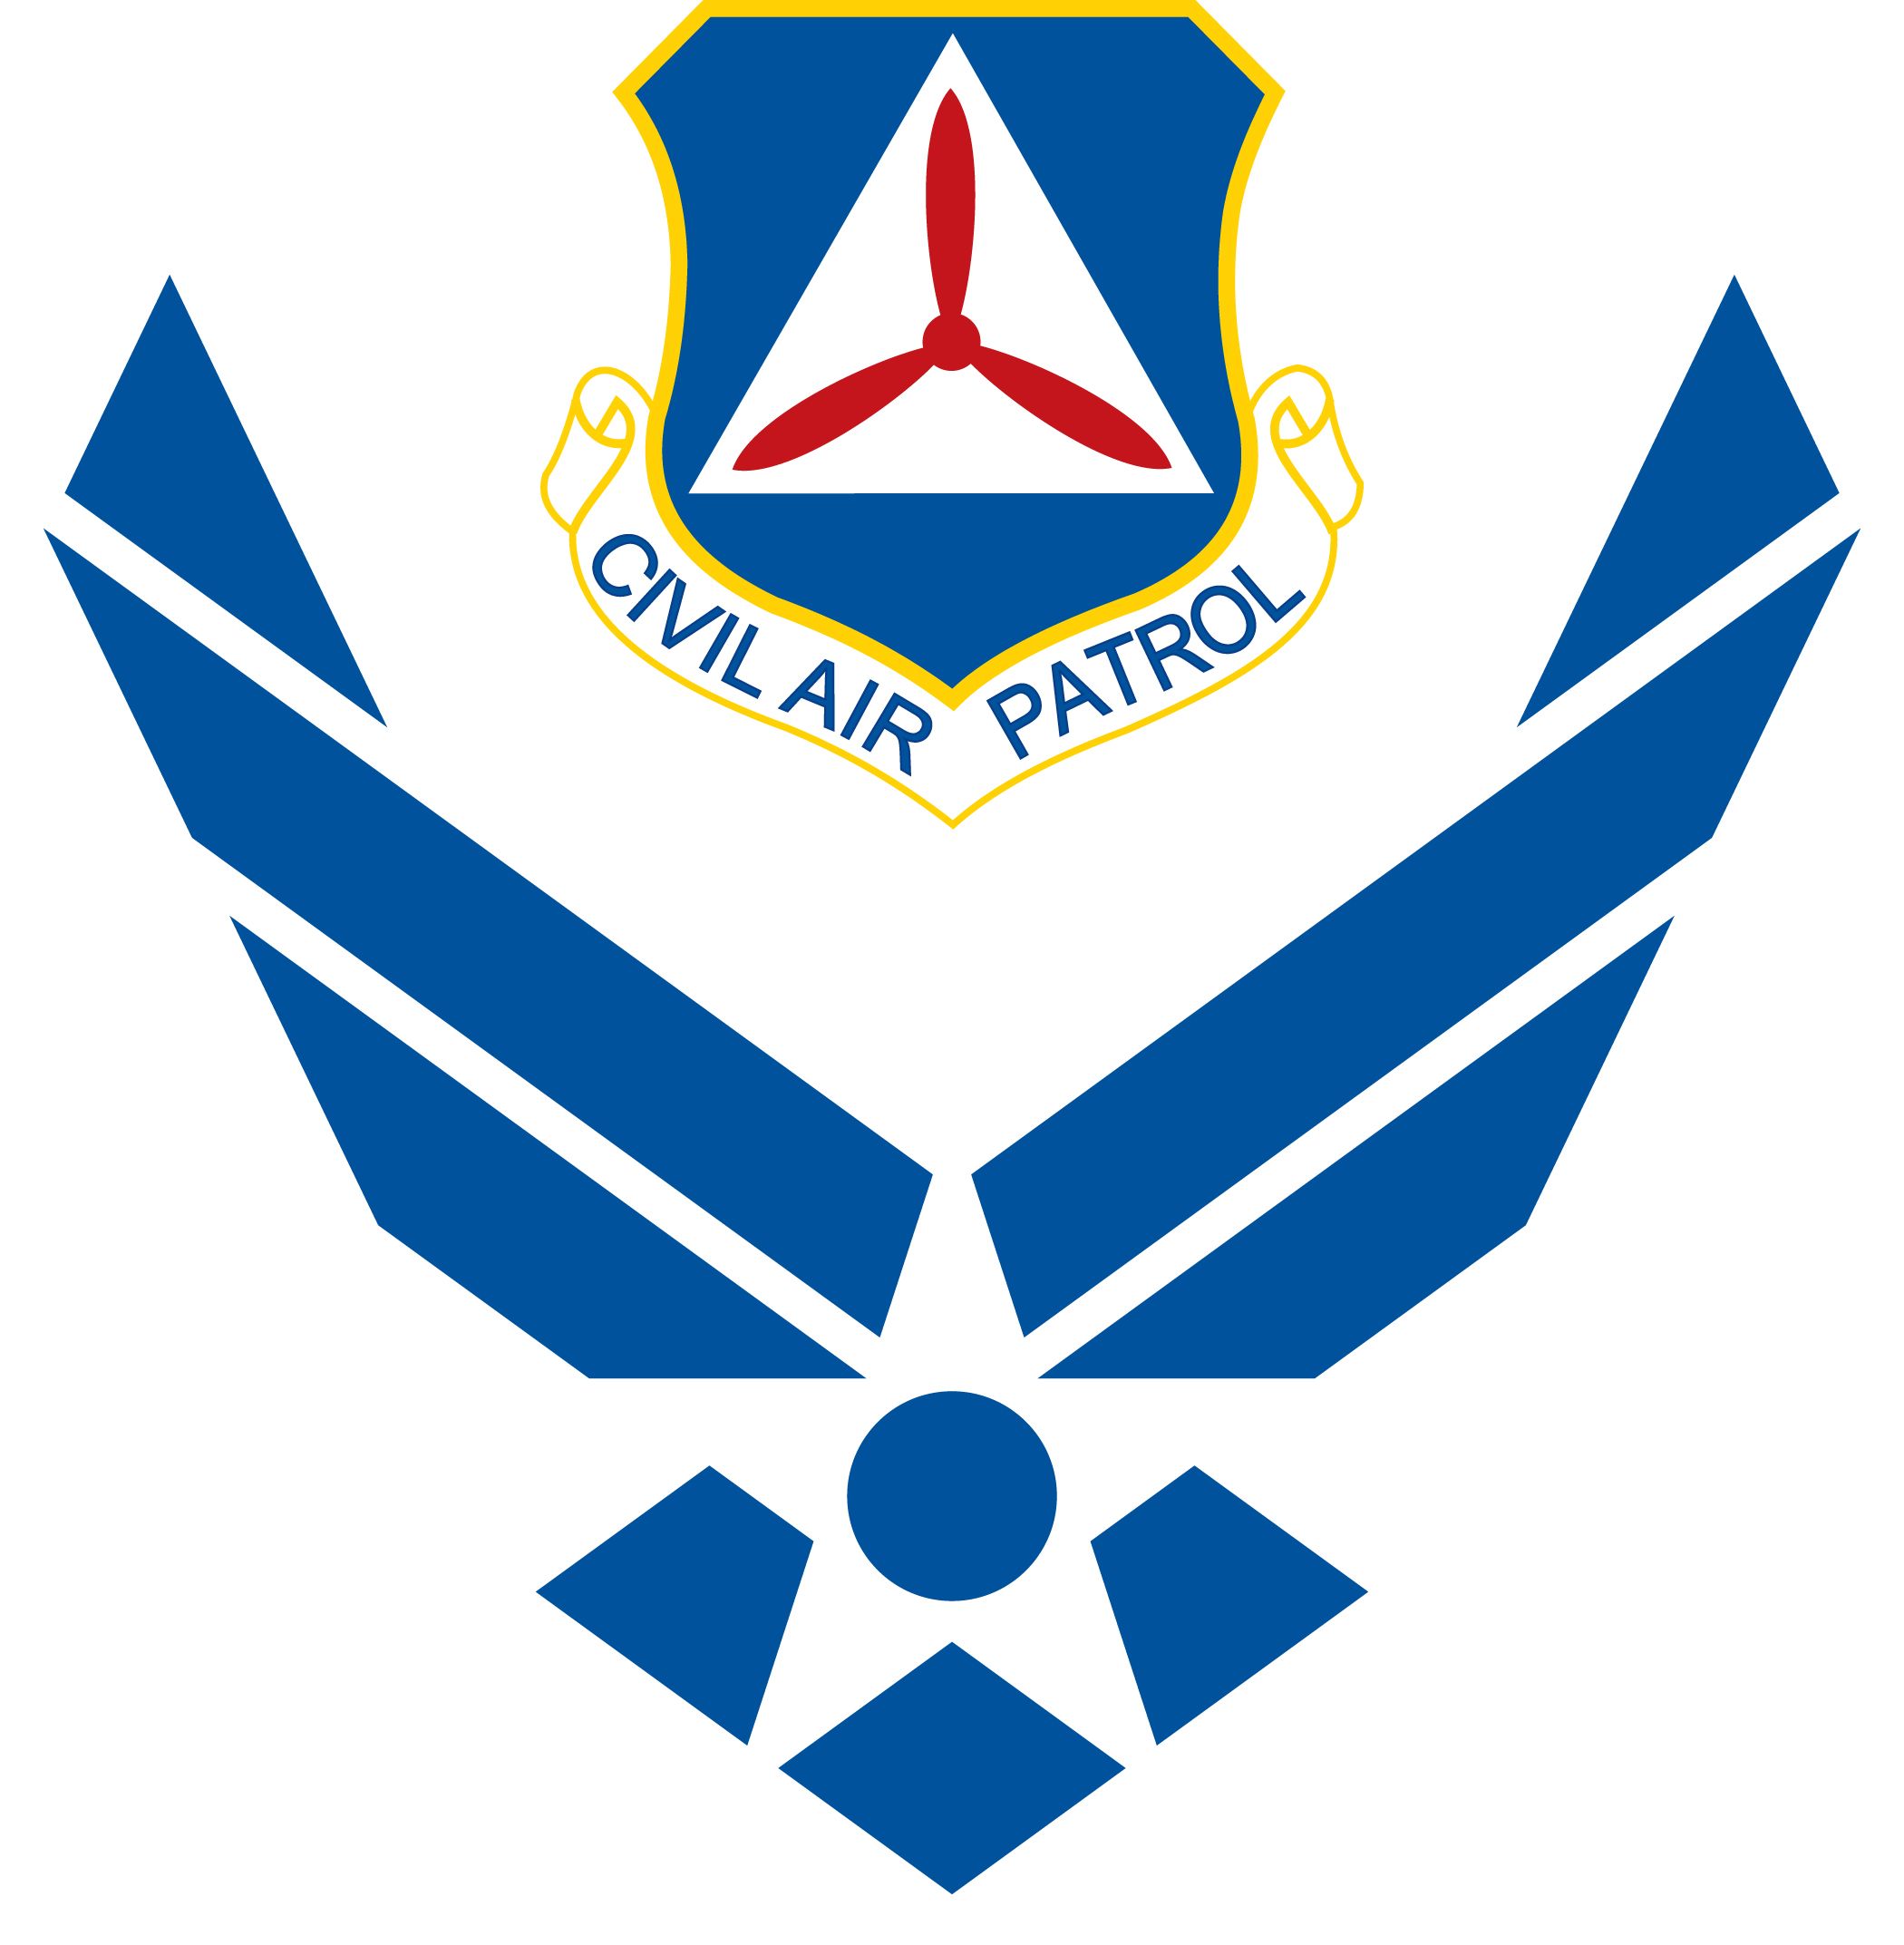 Air Force Symbol with cradled Civil Air Patrol shield